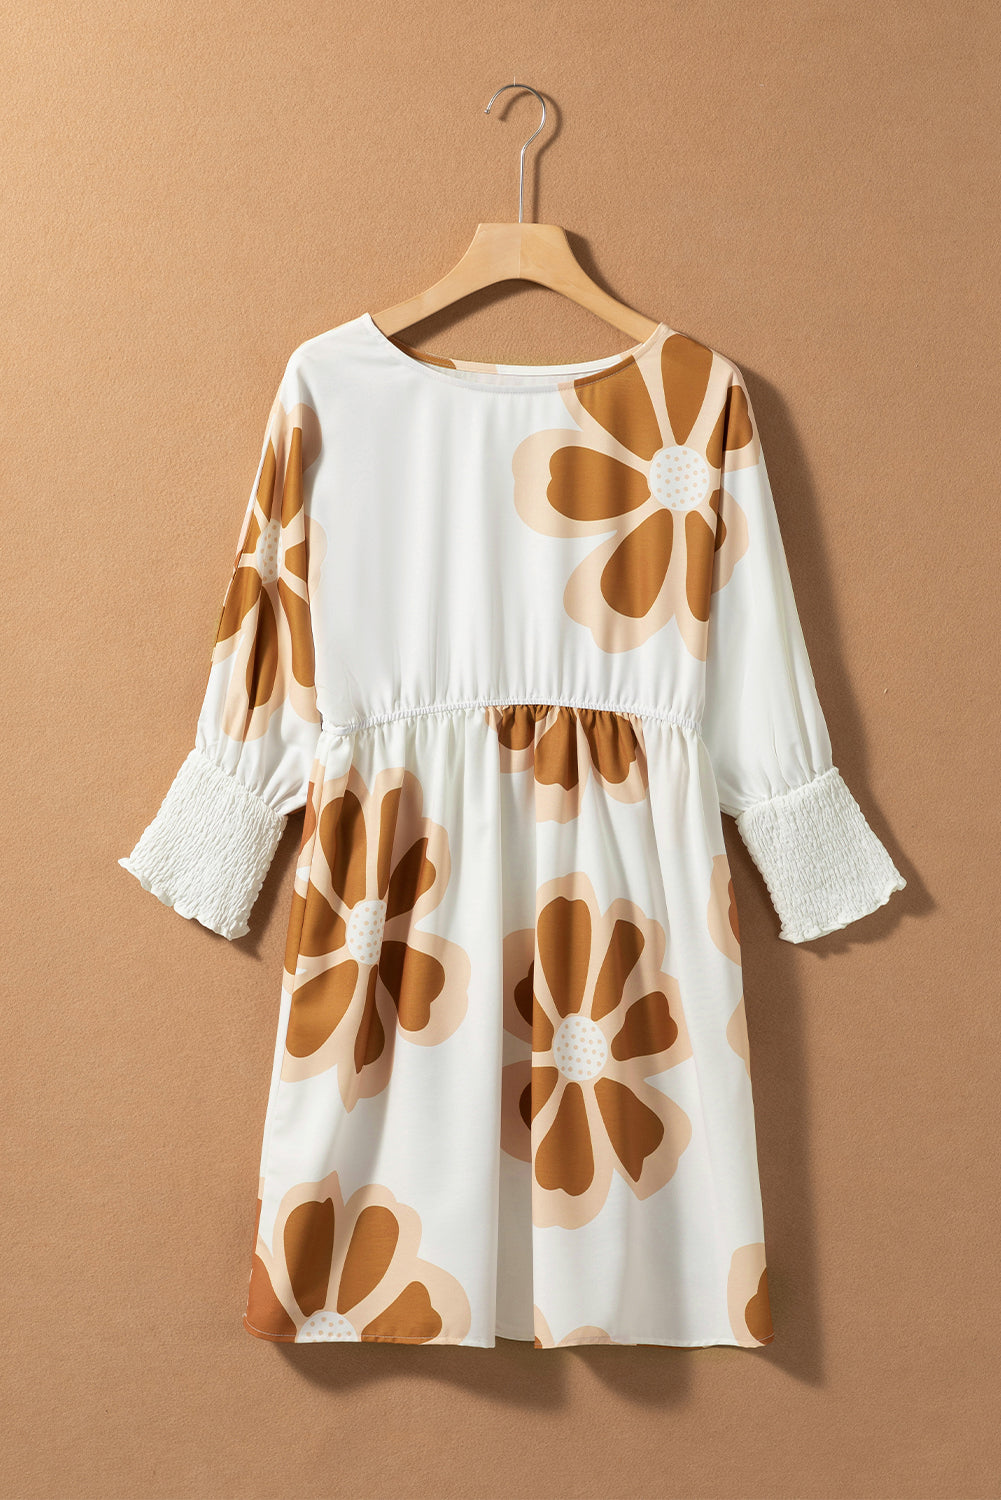 Brown Big Flower Print 3/4 Sleeve Short Dress Floral Dresses JT's Designer Fashion